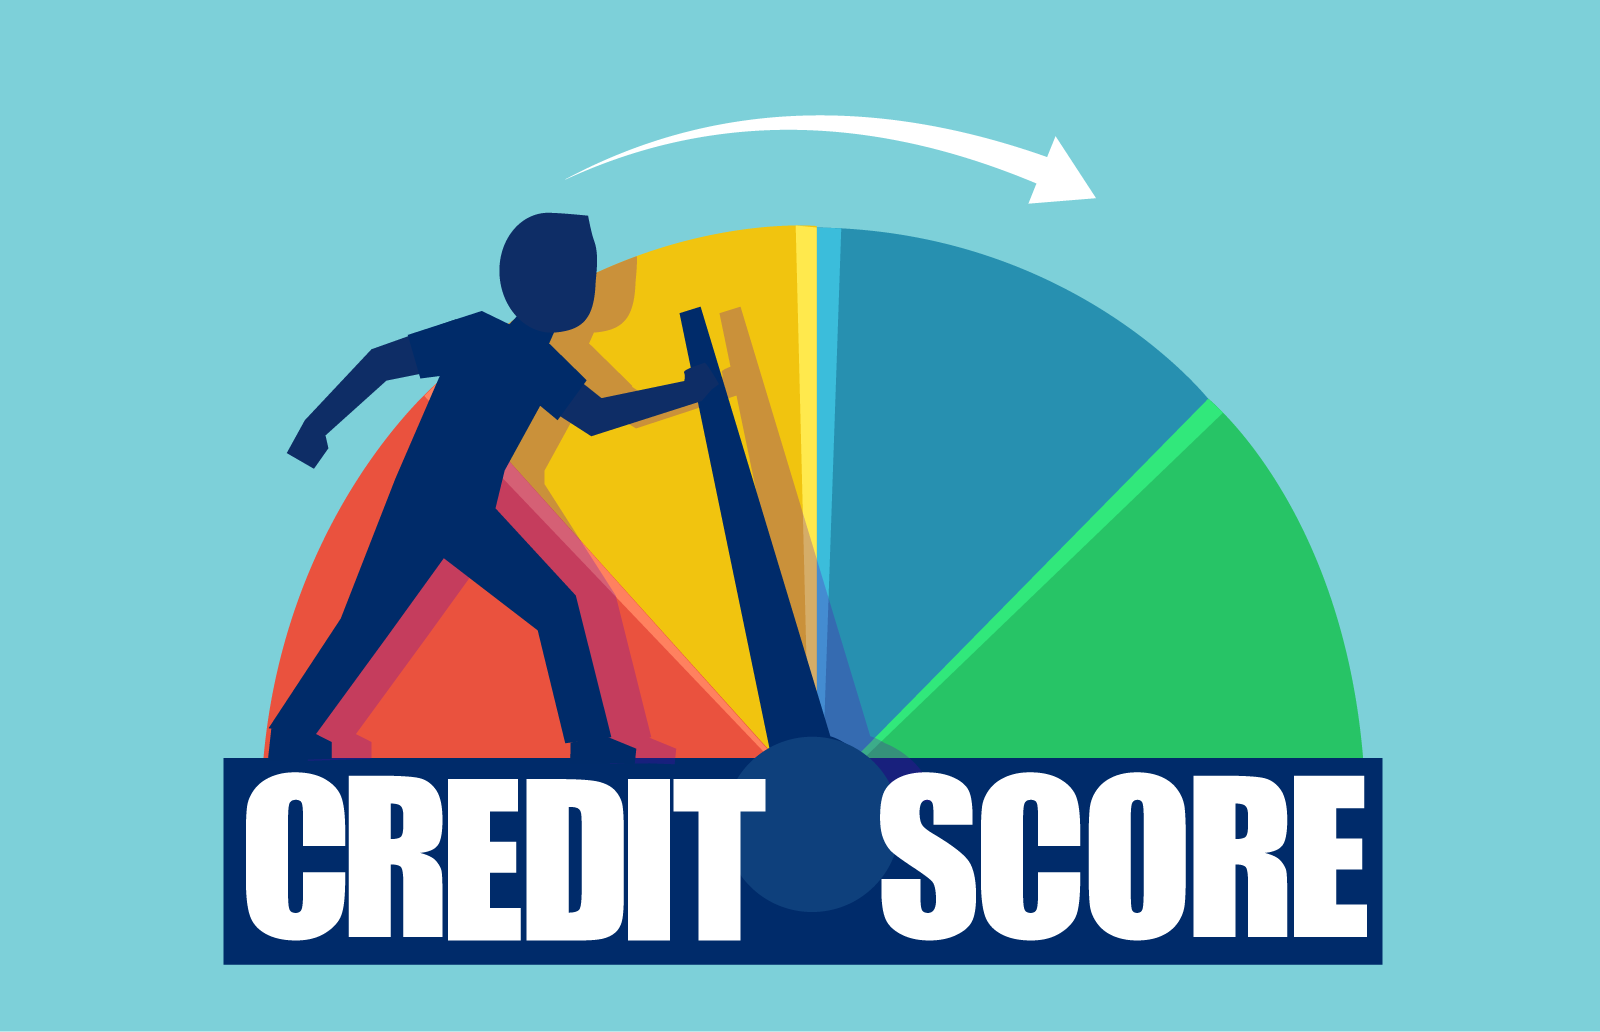 1. Strengthen Credit Score